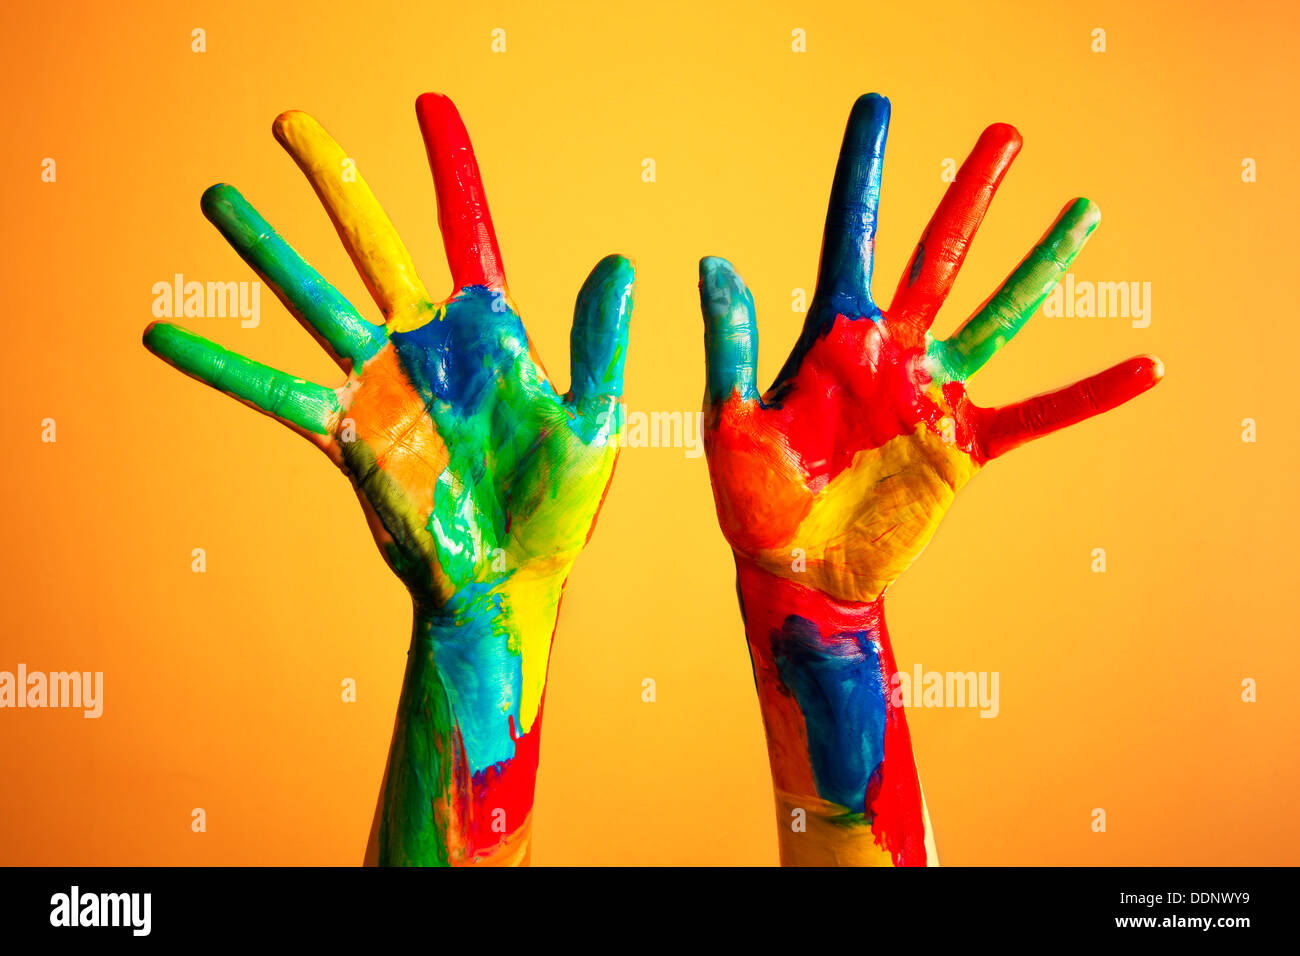 Verniciato colorato mani - creatività / artista / Arte / idee / felicità / concetto di diversità Foto Stock